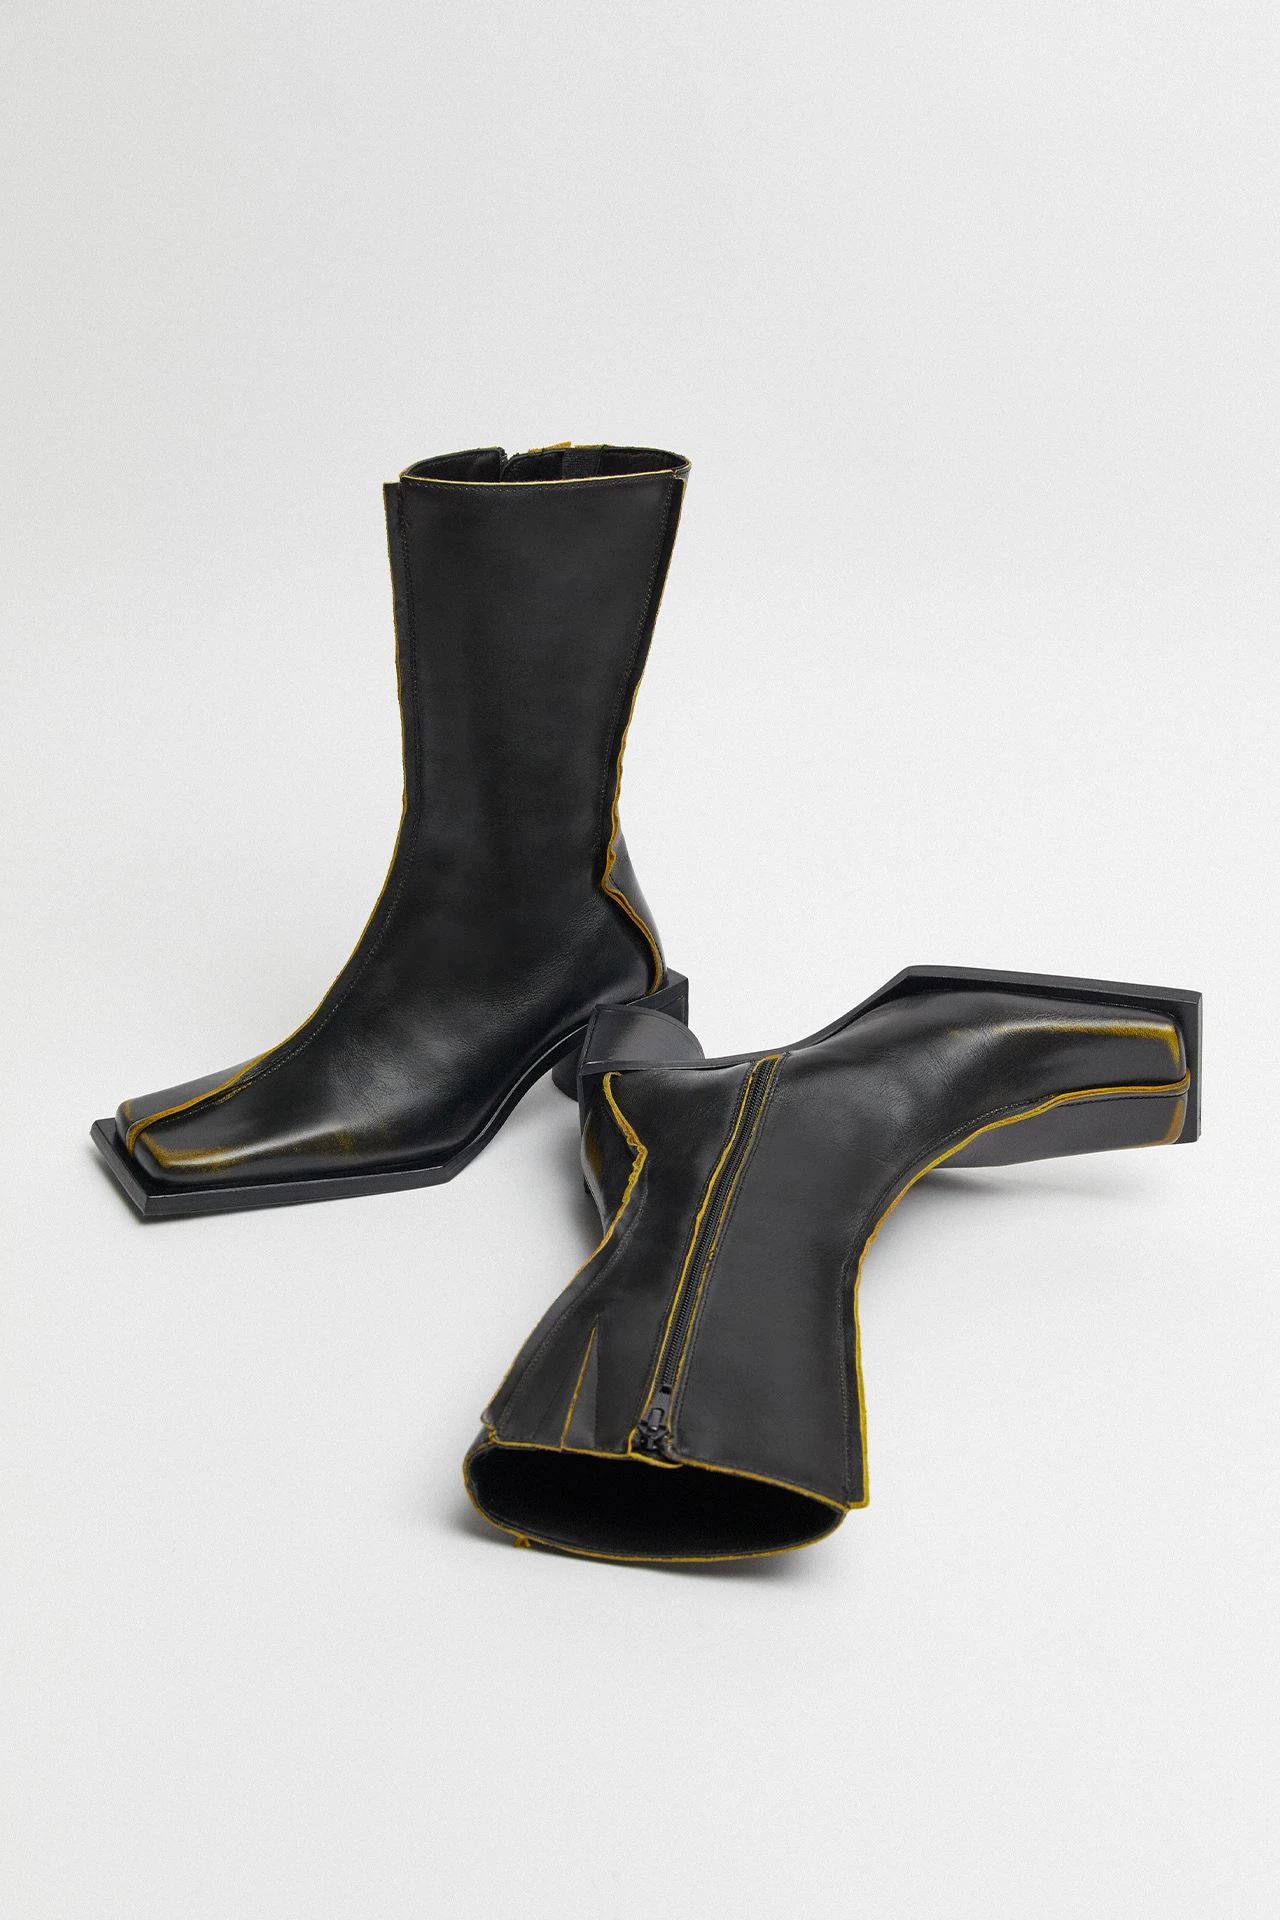 Miista-reiko-black-mustard-boots-02